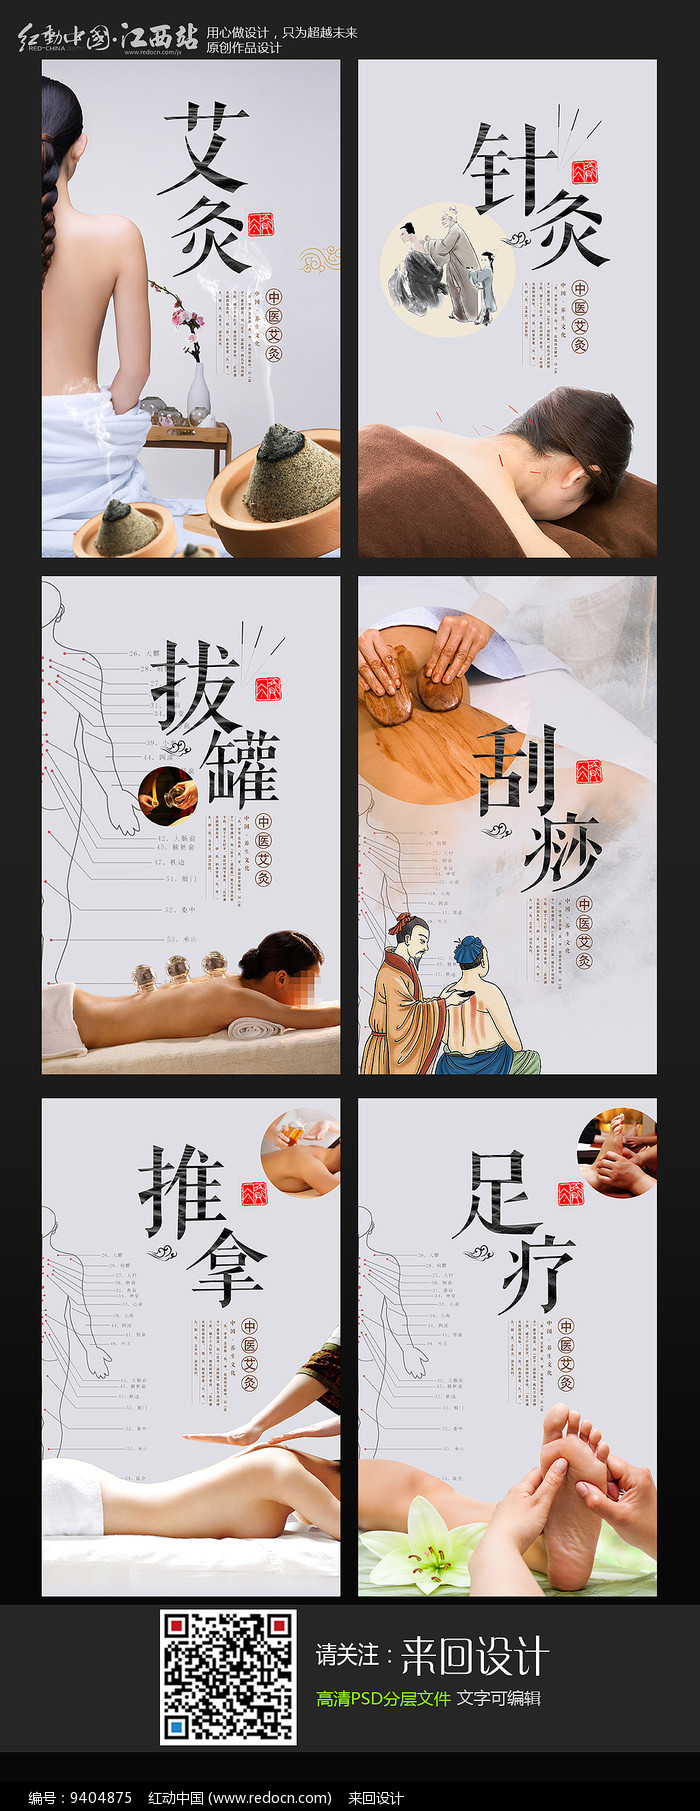 专辑 海报 中国风海报 养生海报设计专辑 当前  素材描述:红动网提供